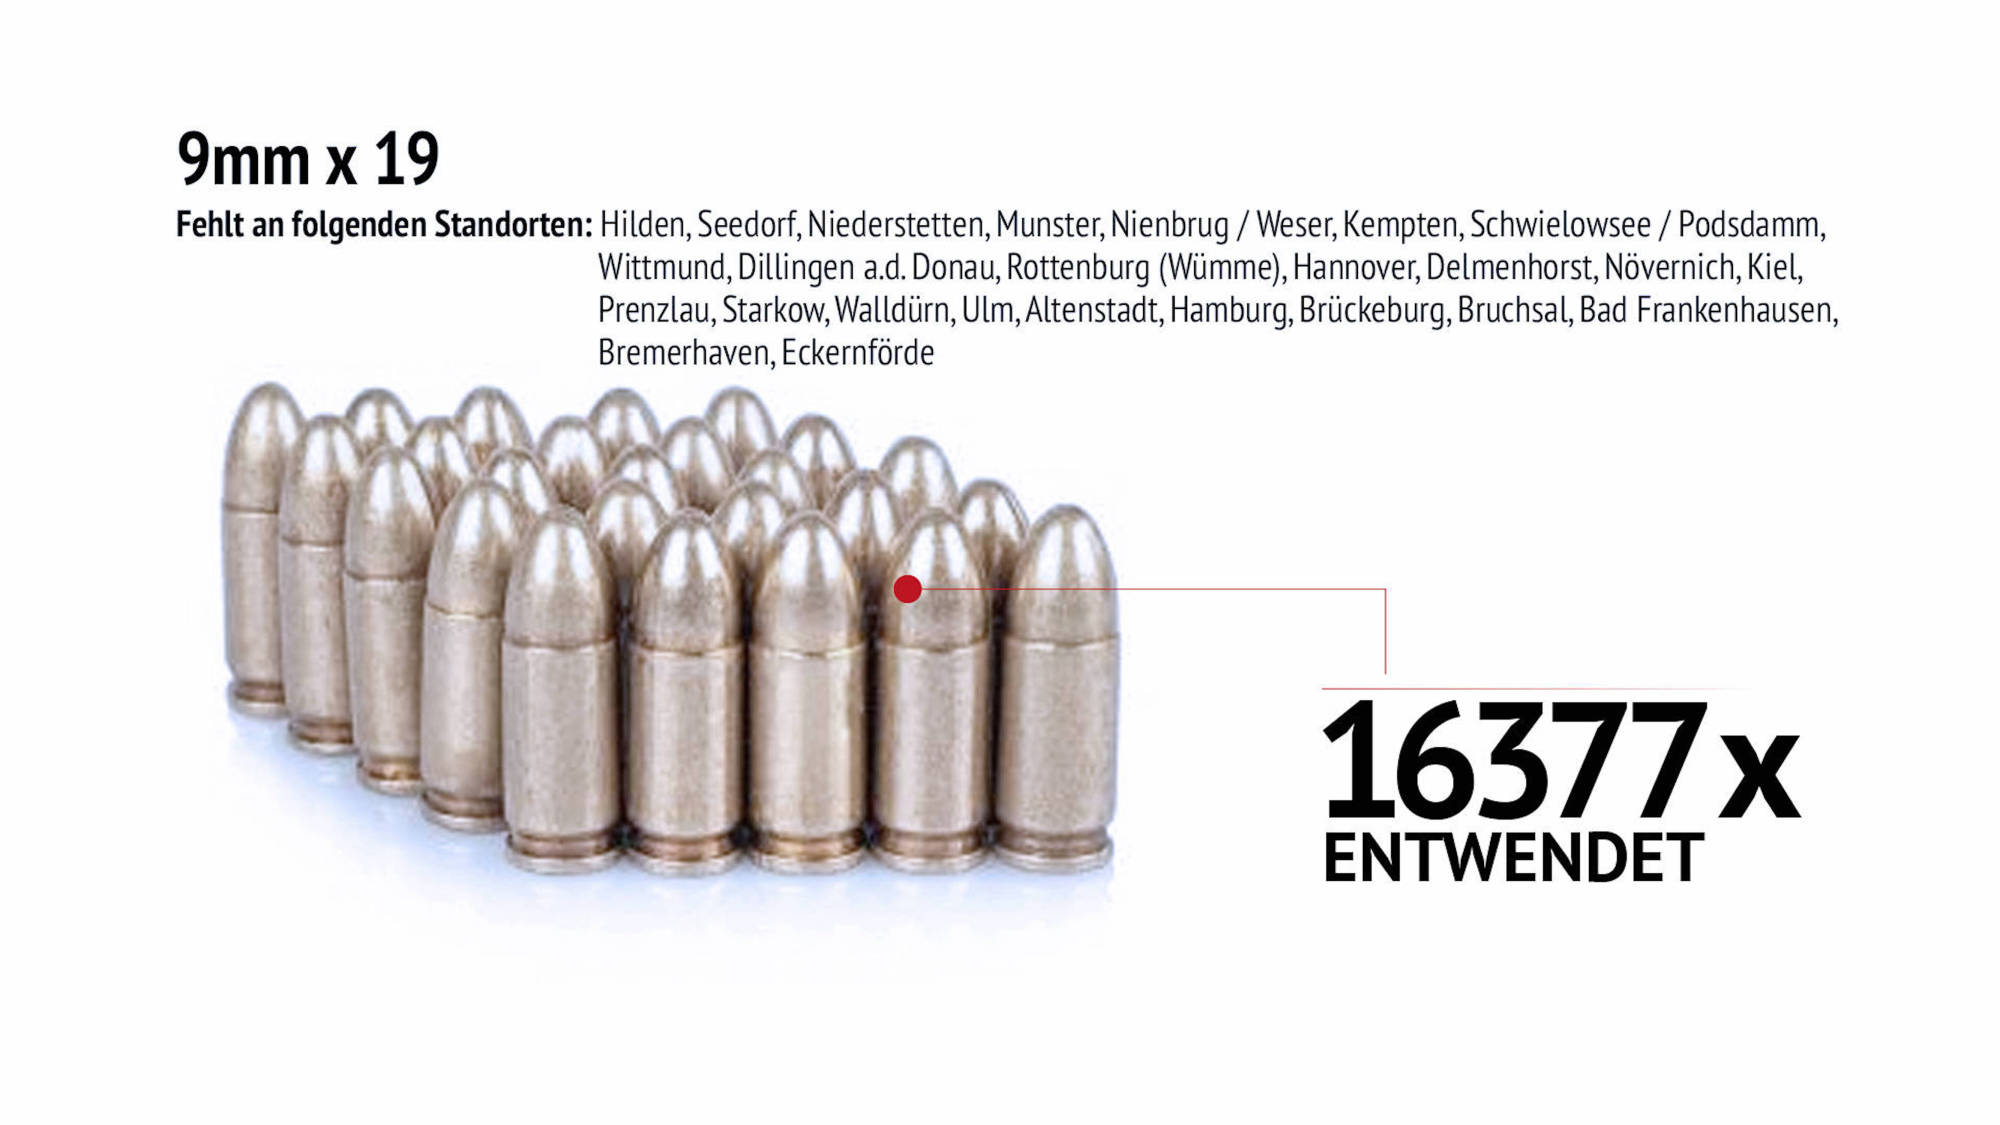 Verschwundene Waffen: 9mmx19 Munition.